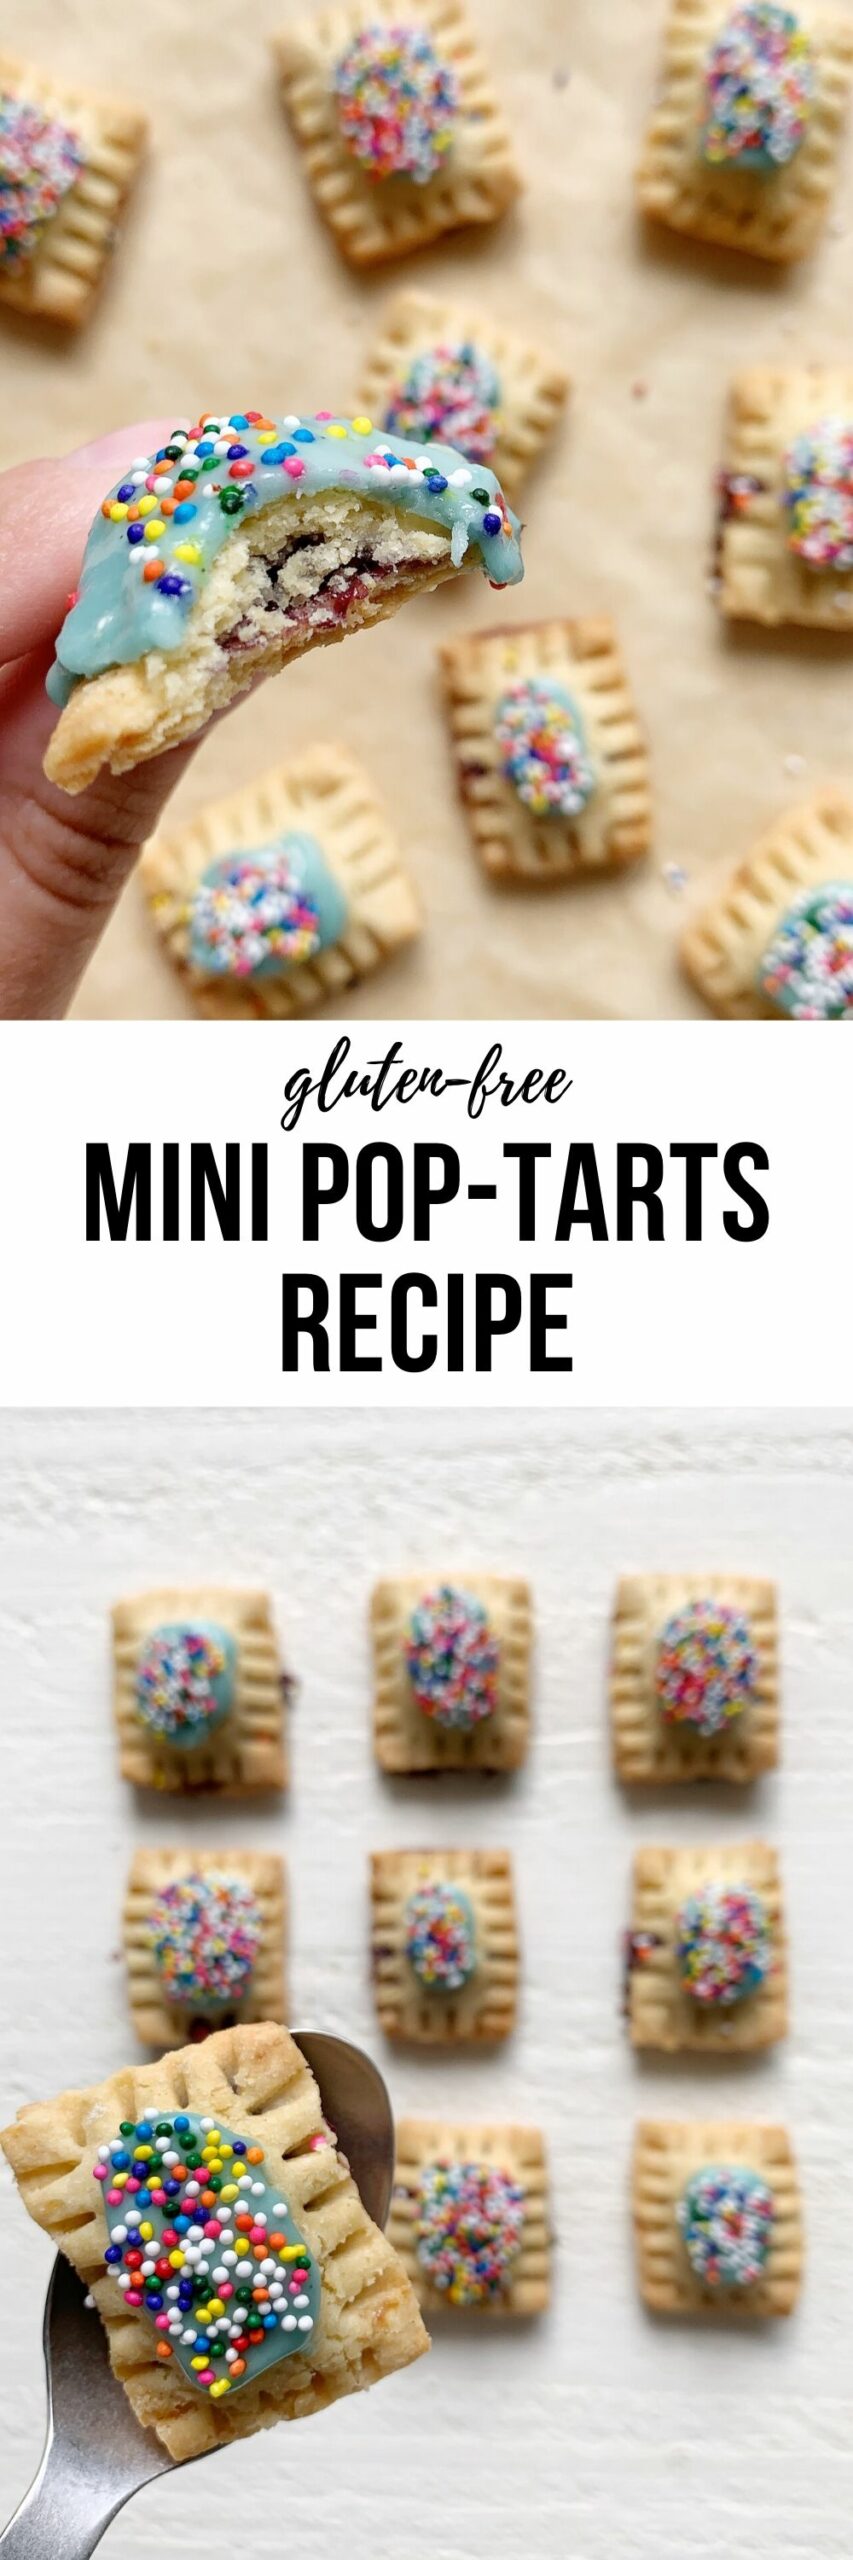 Gluten Free Mini Pop Tarts Recipe